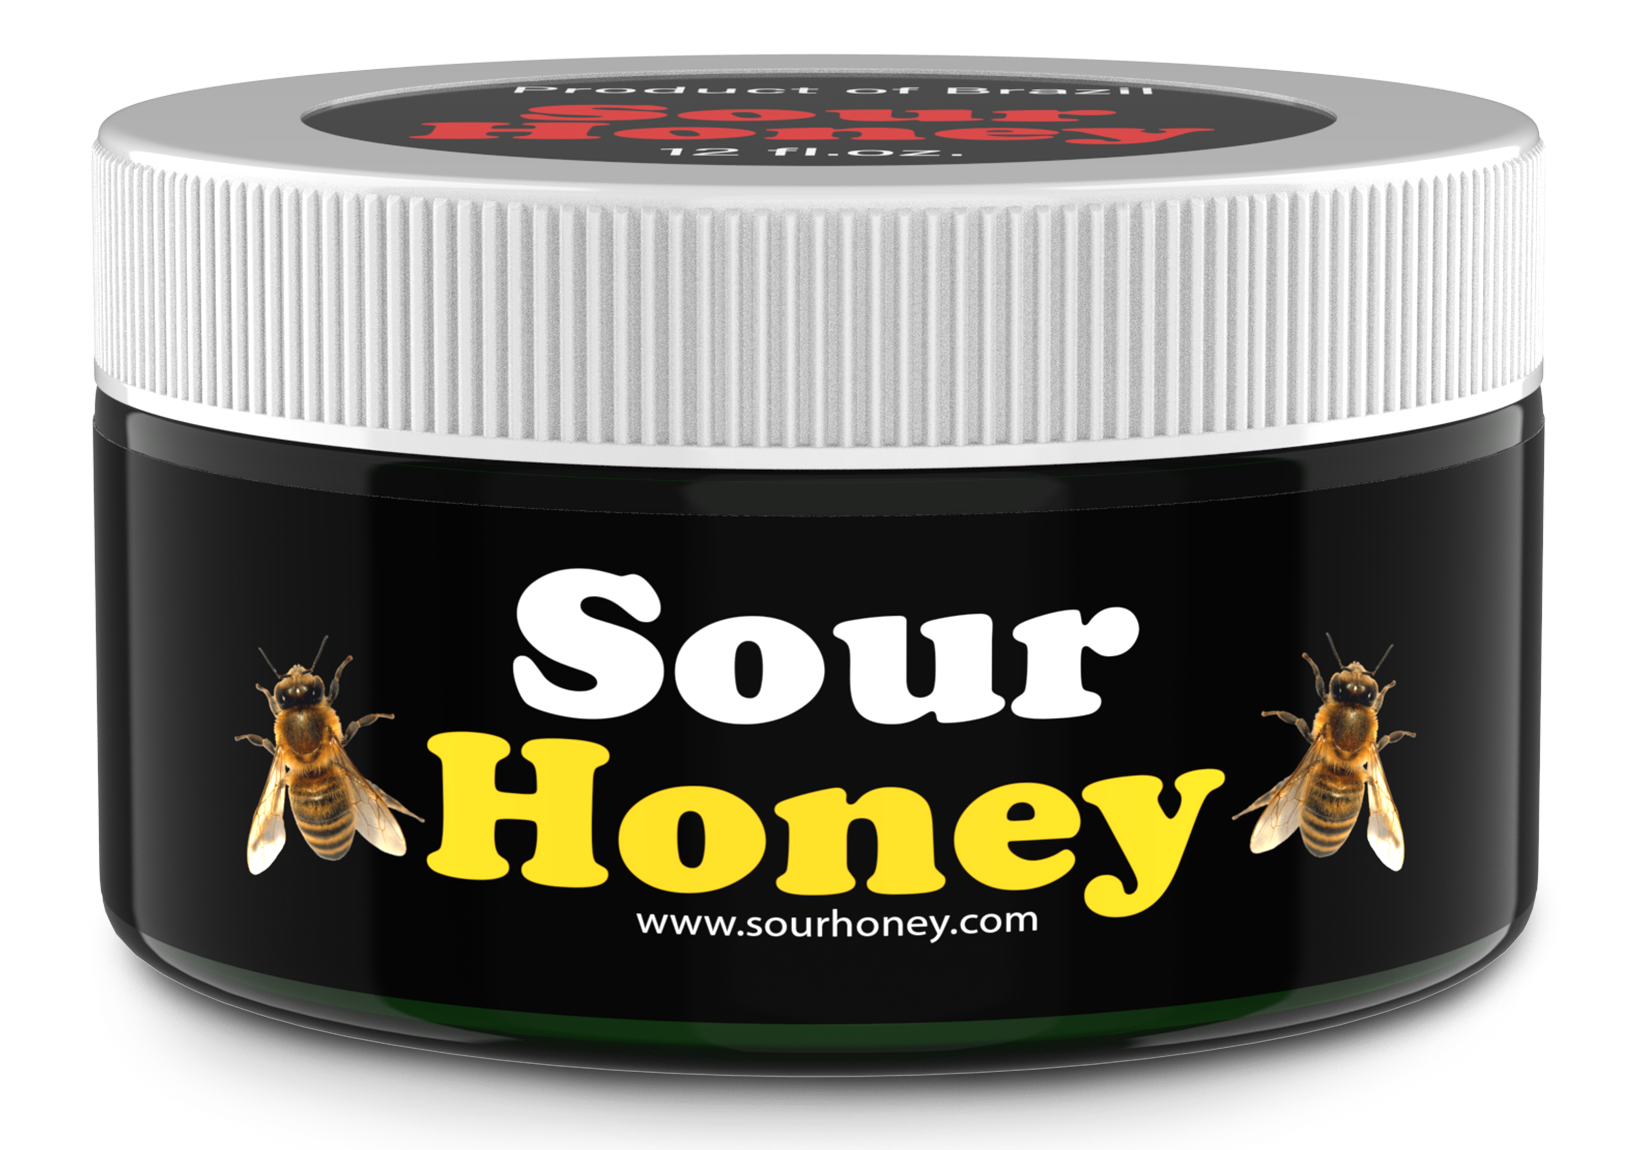 Jar of Sour Honey From Brazil